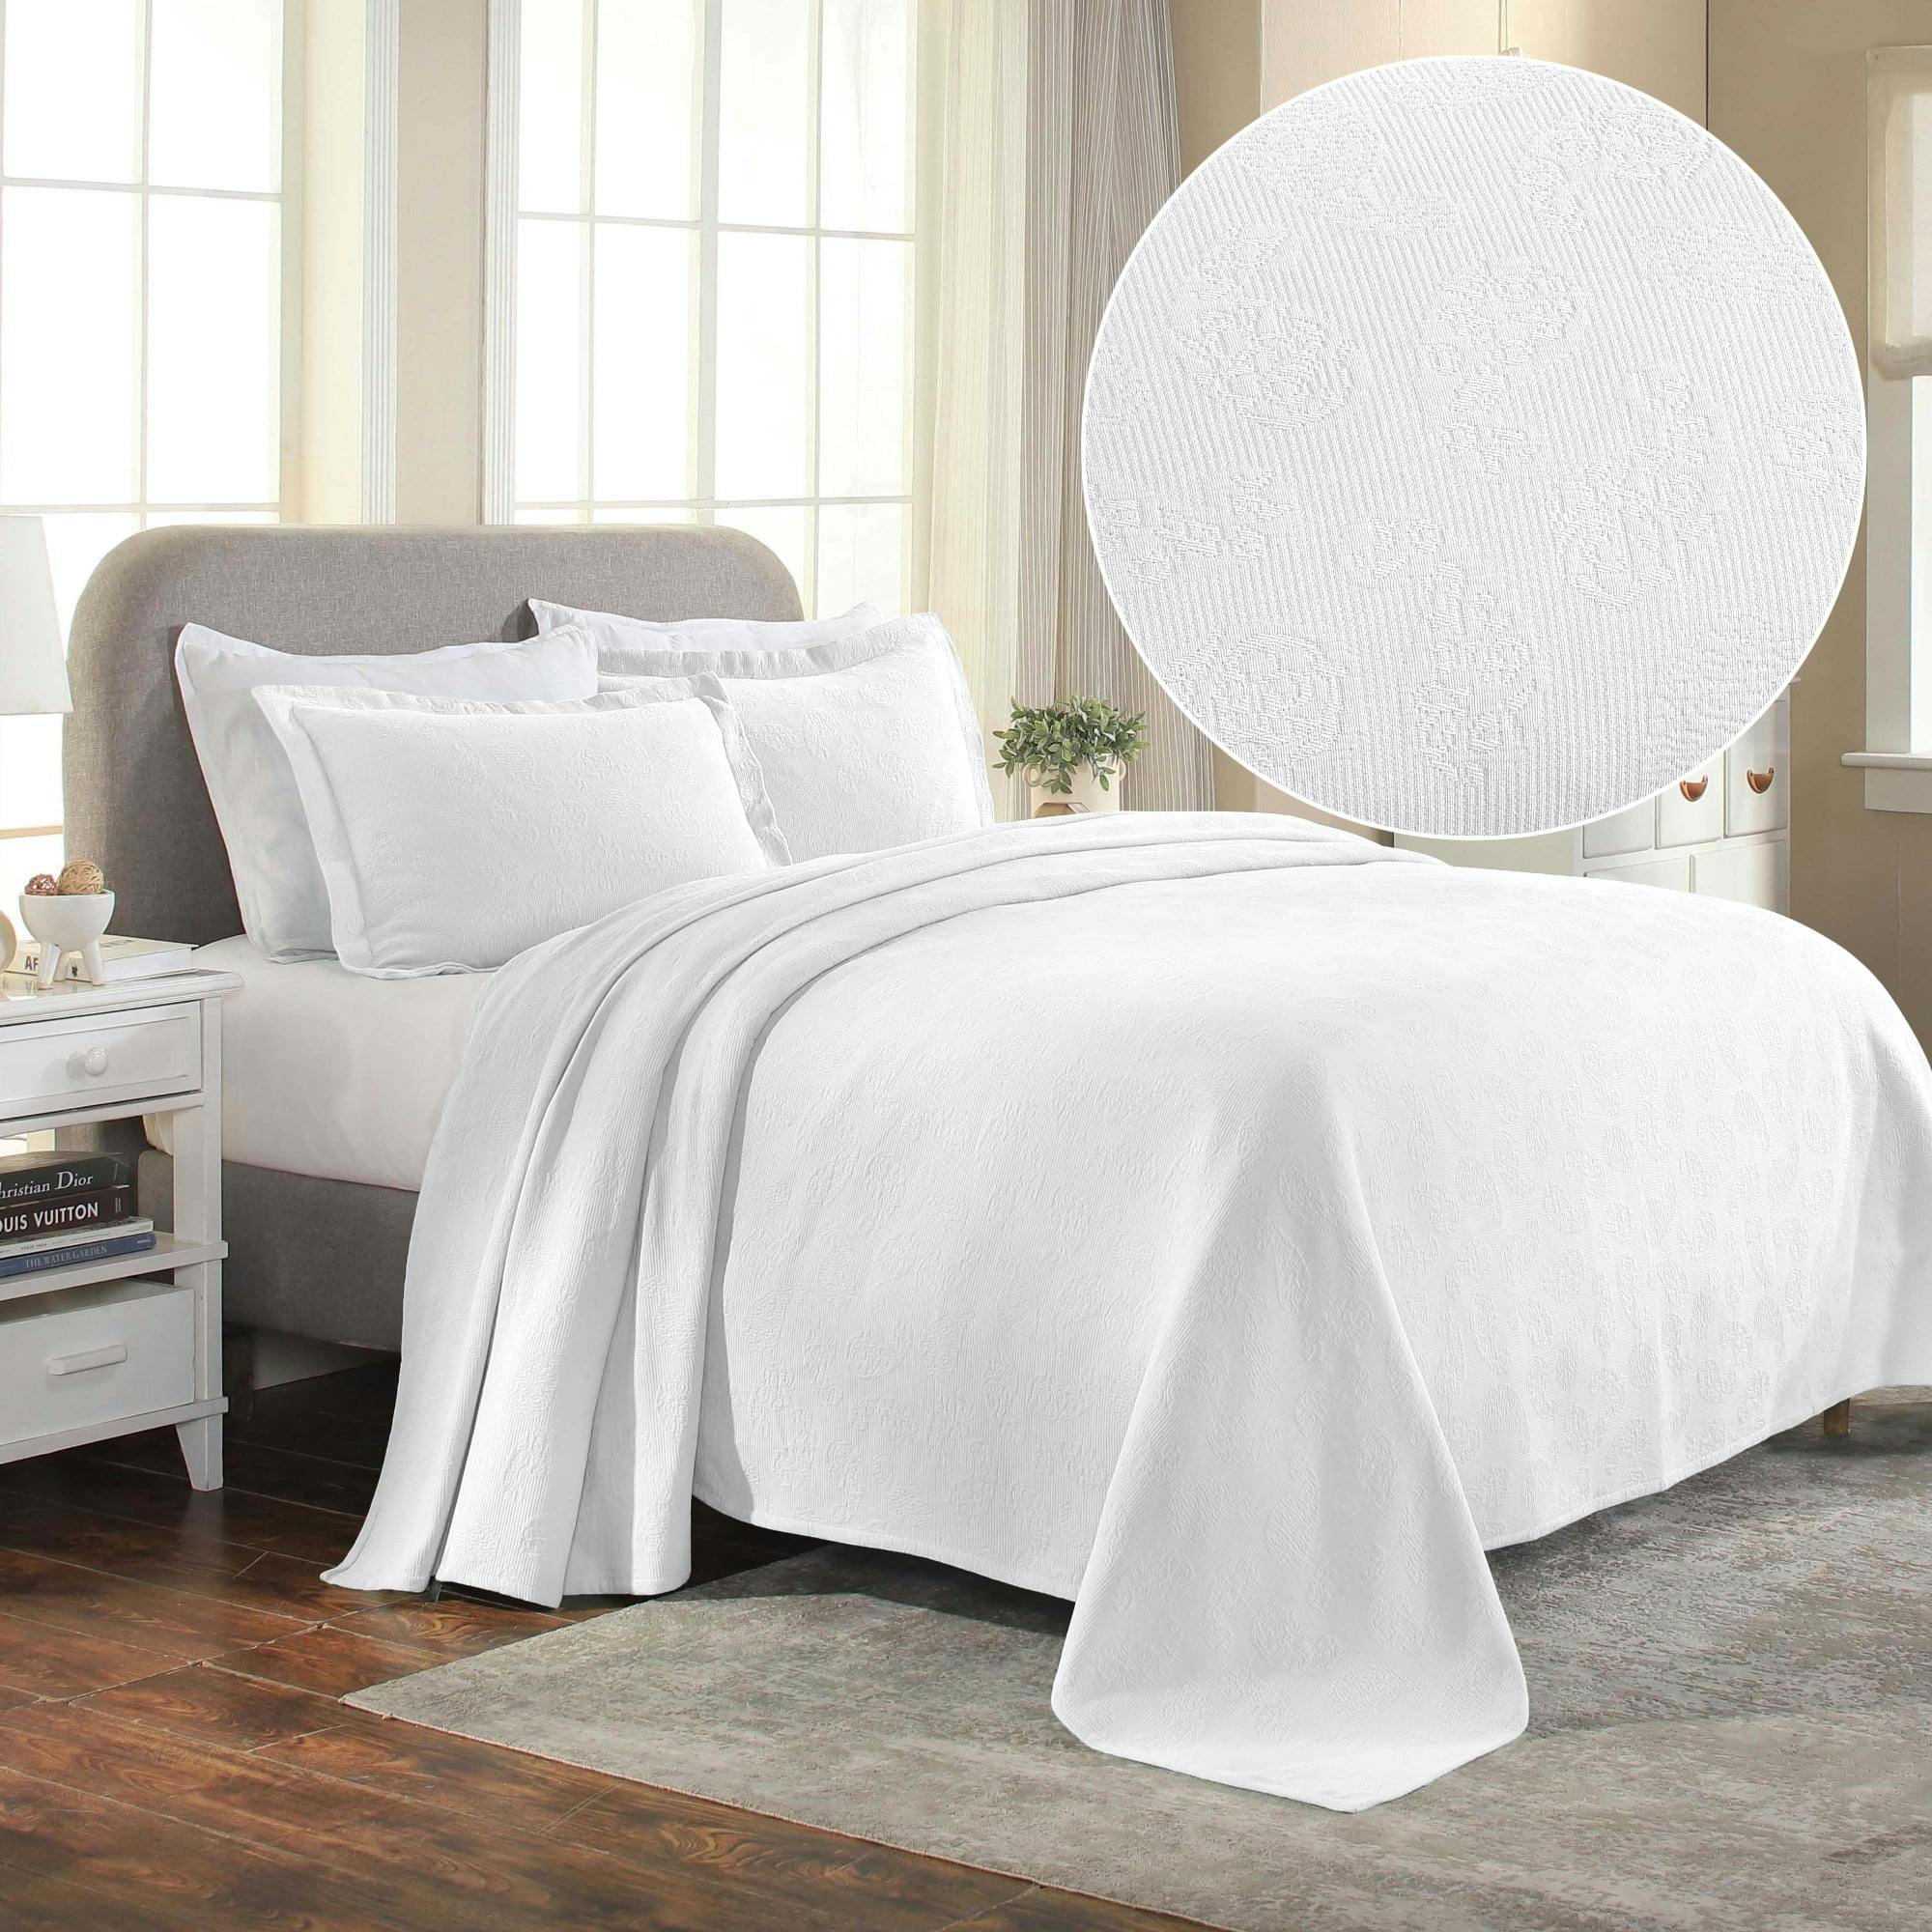 Elegant King-Sized White Cotton Paisley Bedspread 3-Piece Set